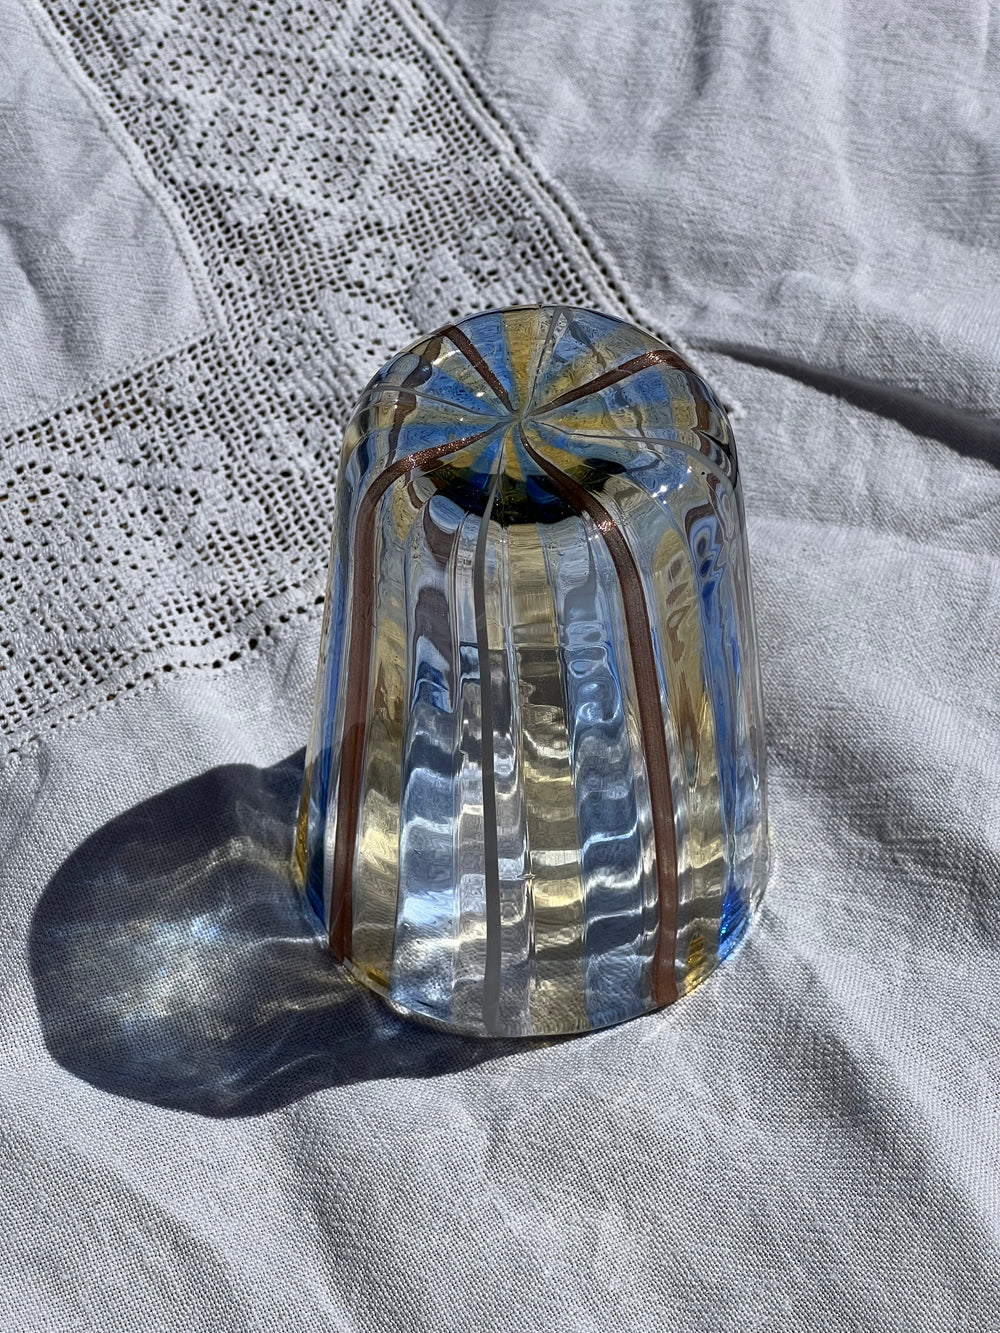 Håndblæst Murano Glas med Blå, Gule, Hvide og Brune Striber Murano